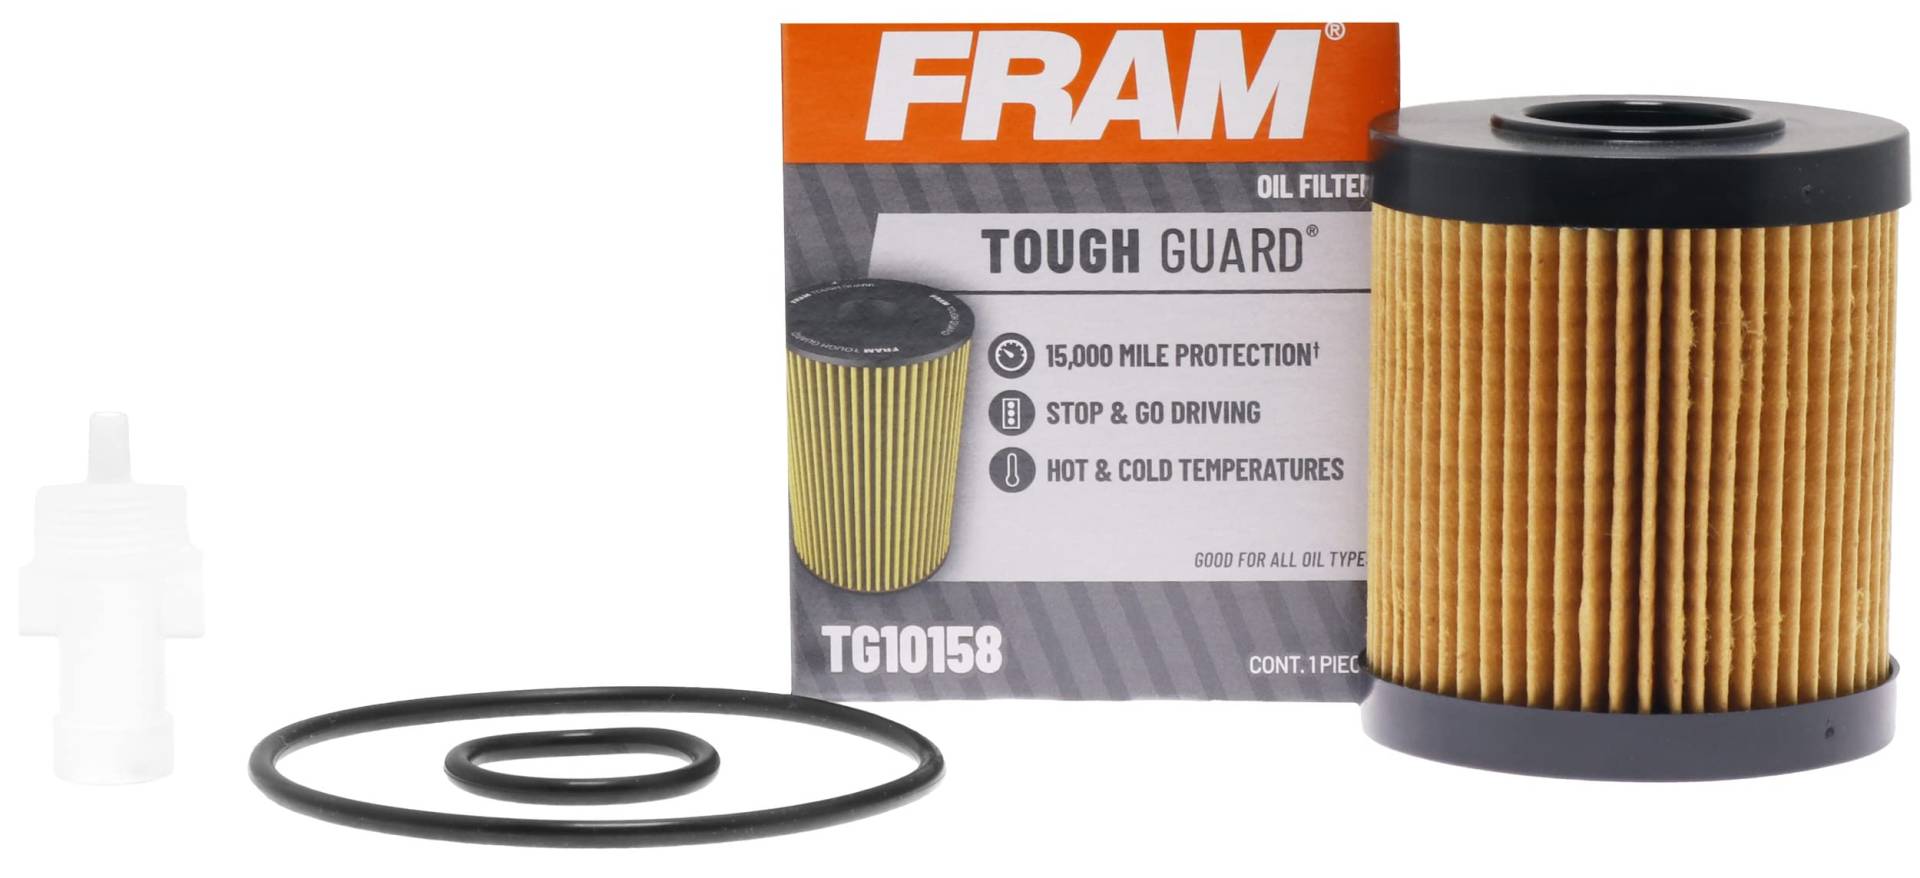 FRAM Tough Guard TG10158-1 Ölfilter mit 15.000 Kilometerwechselintervall, Vollstromkartusche, Ölfilter von Fram